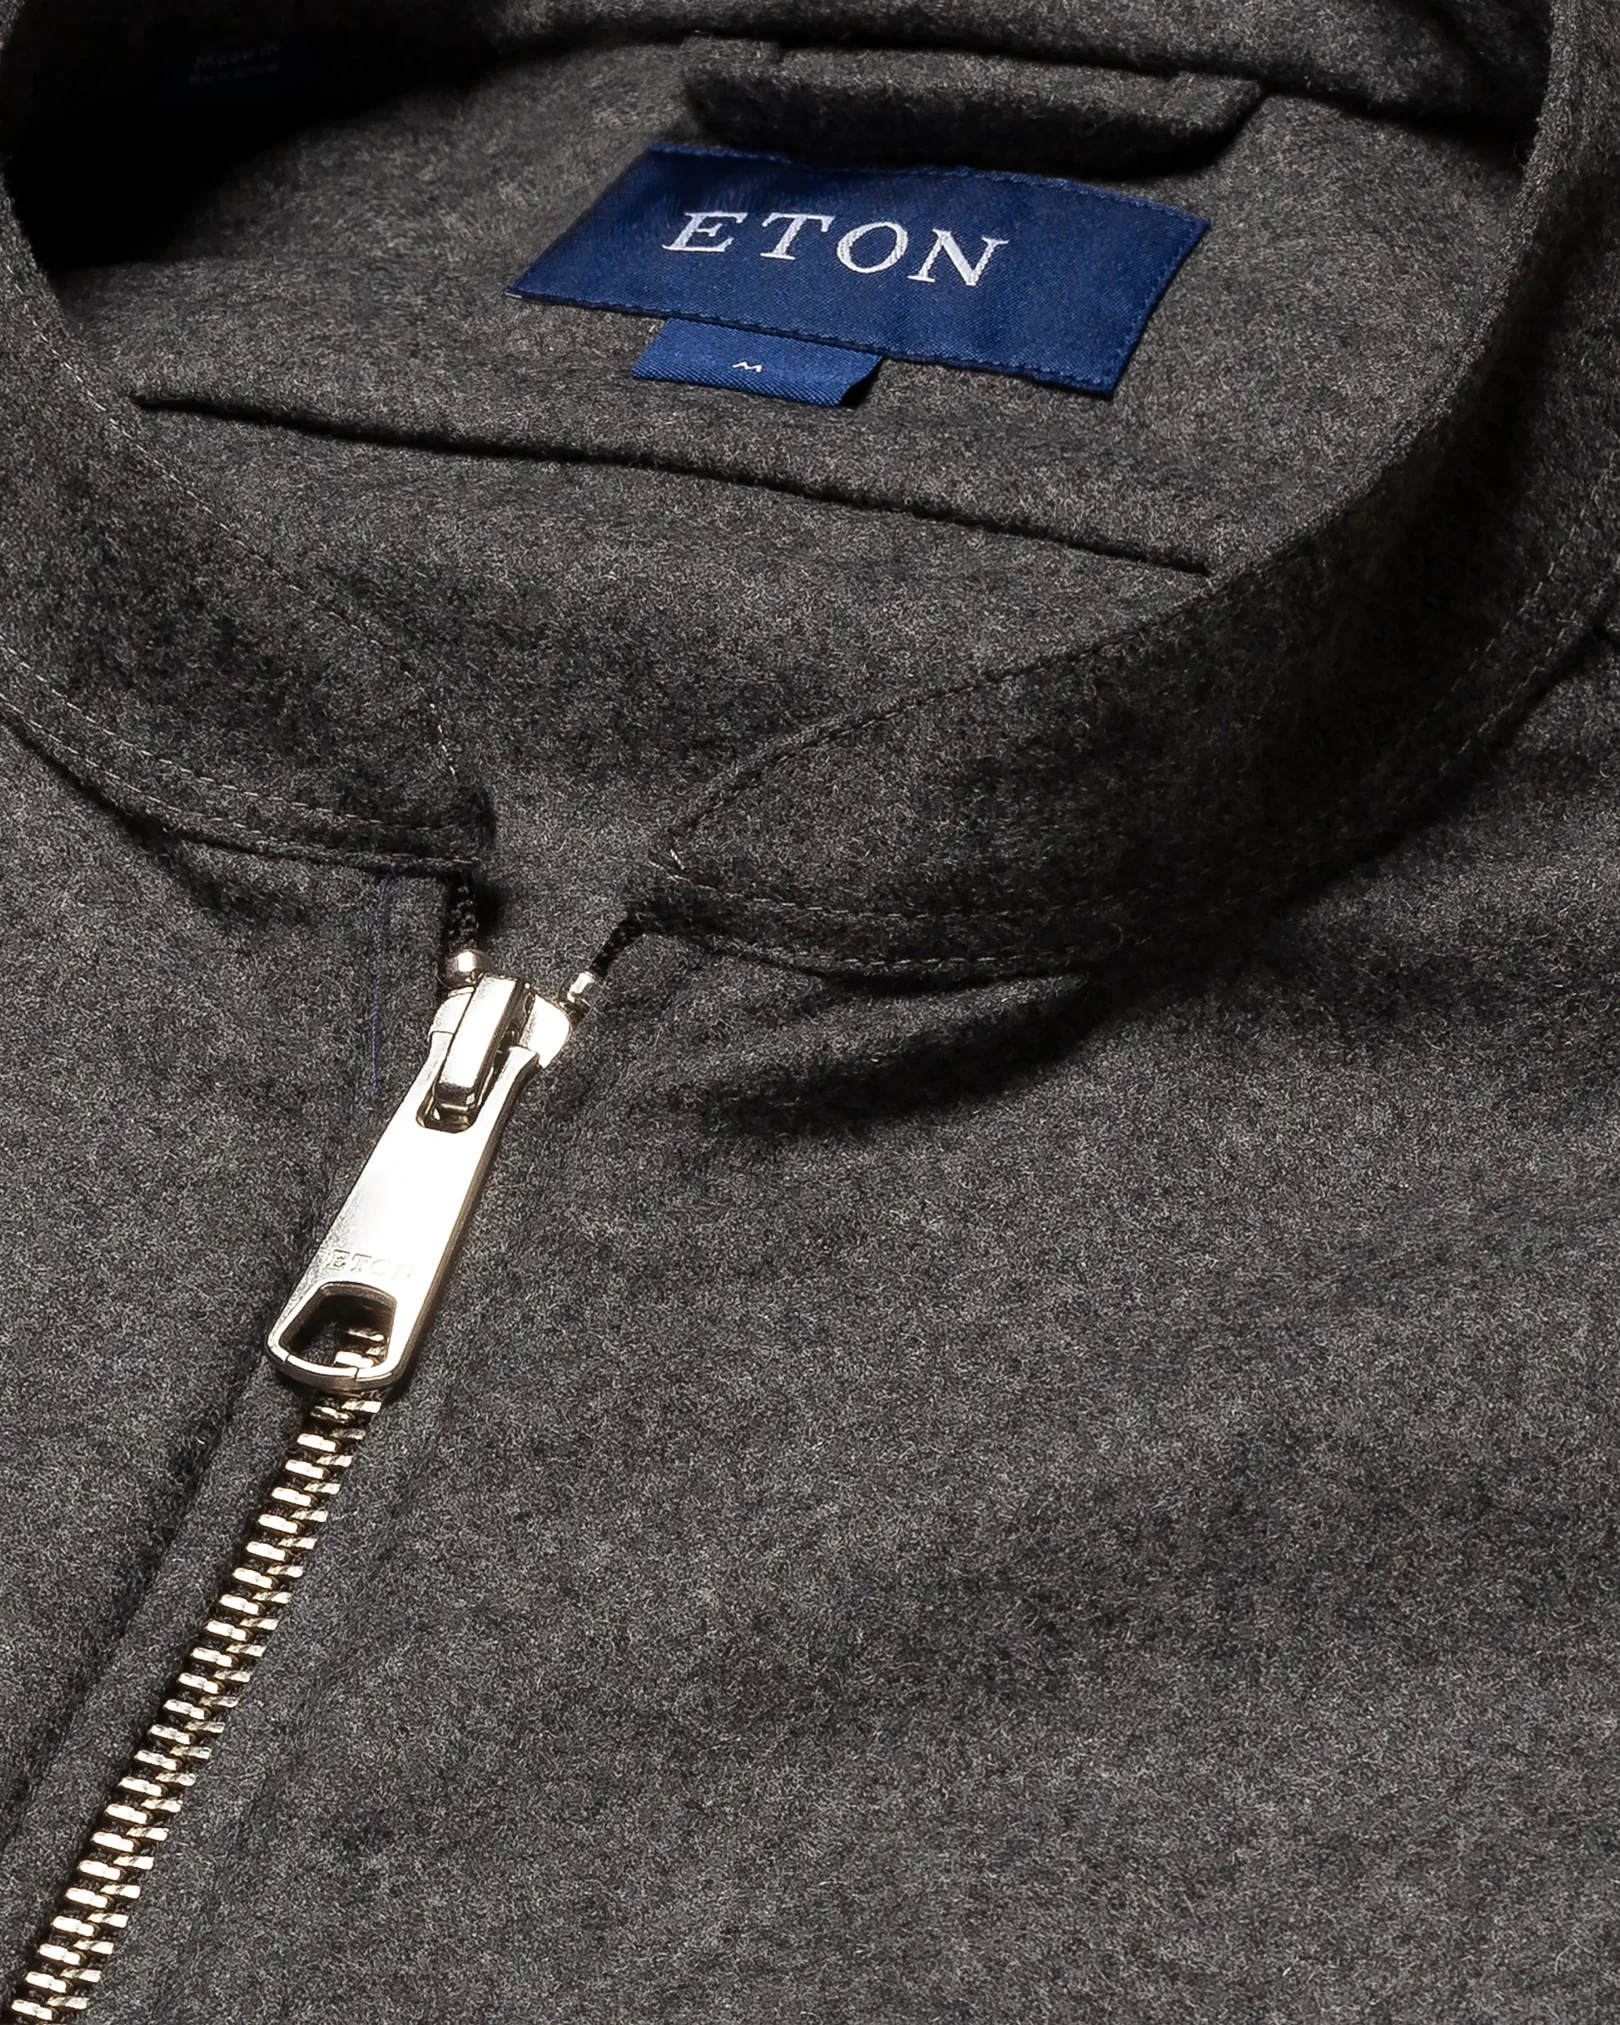 Eton - mid grey twill wool cashmere vest